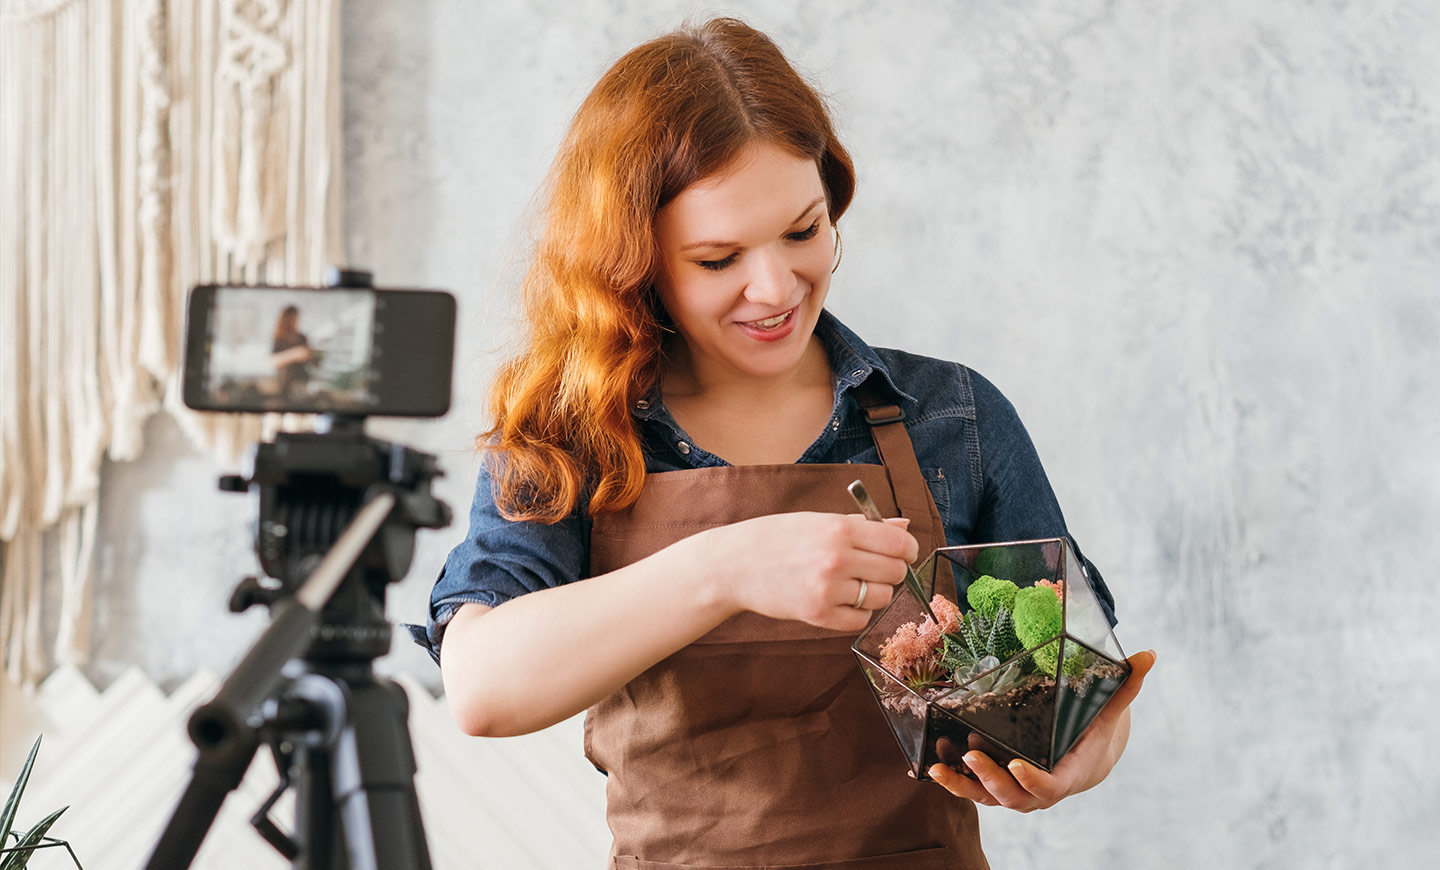 นักจัดดอกไม้กำลังใช้สมาร์ทโฟนสตรีมสอนการทำสวนที่บ้านแบบออนไลน์ในหัวข้อการปลูกพืชอวบน้ำ